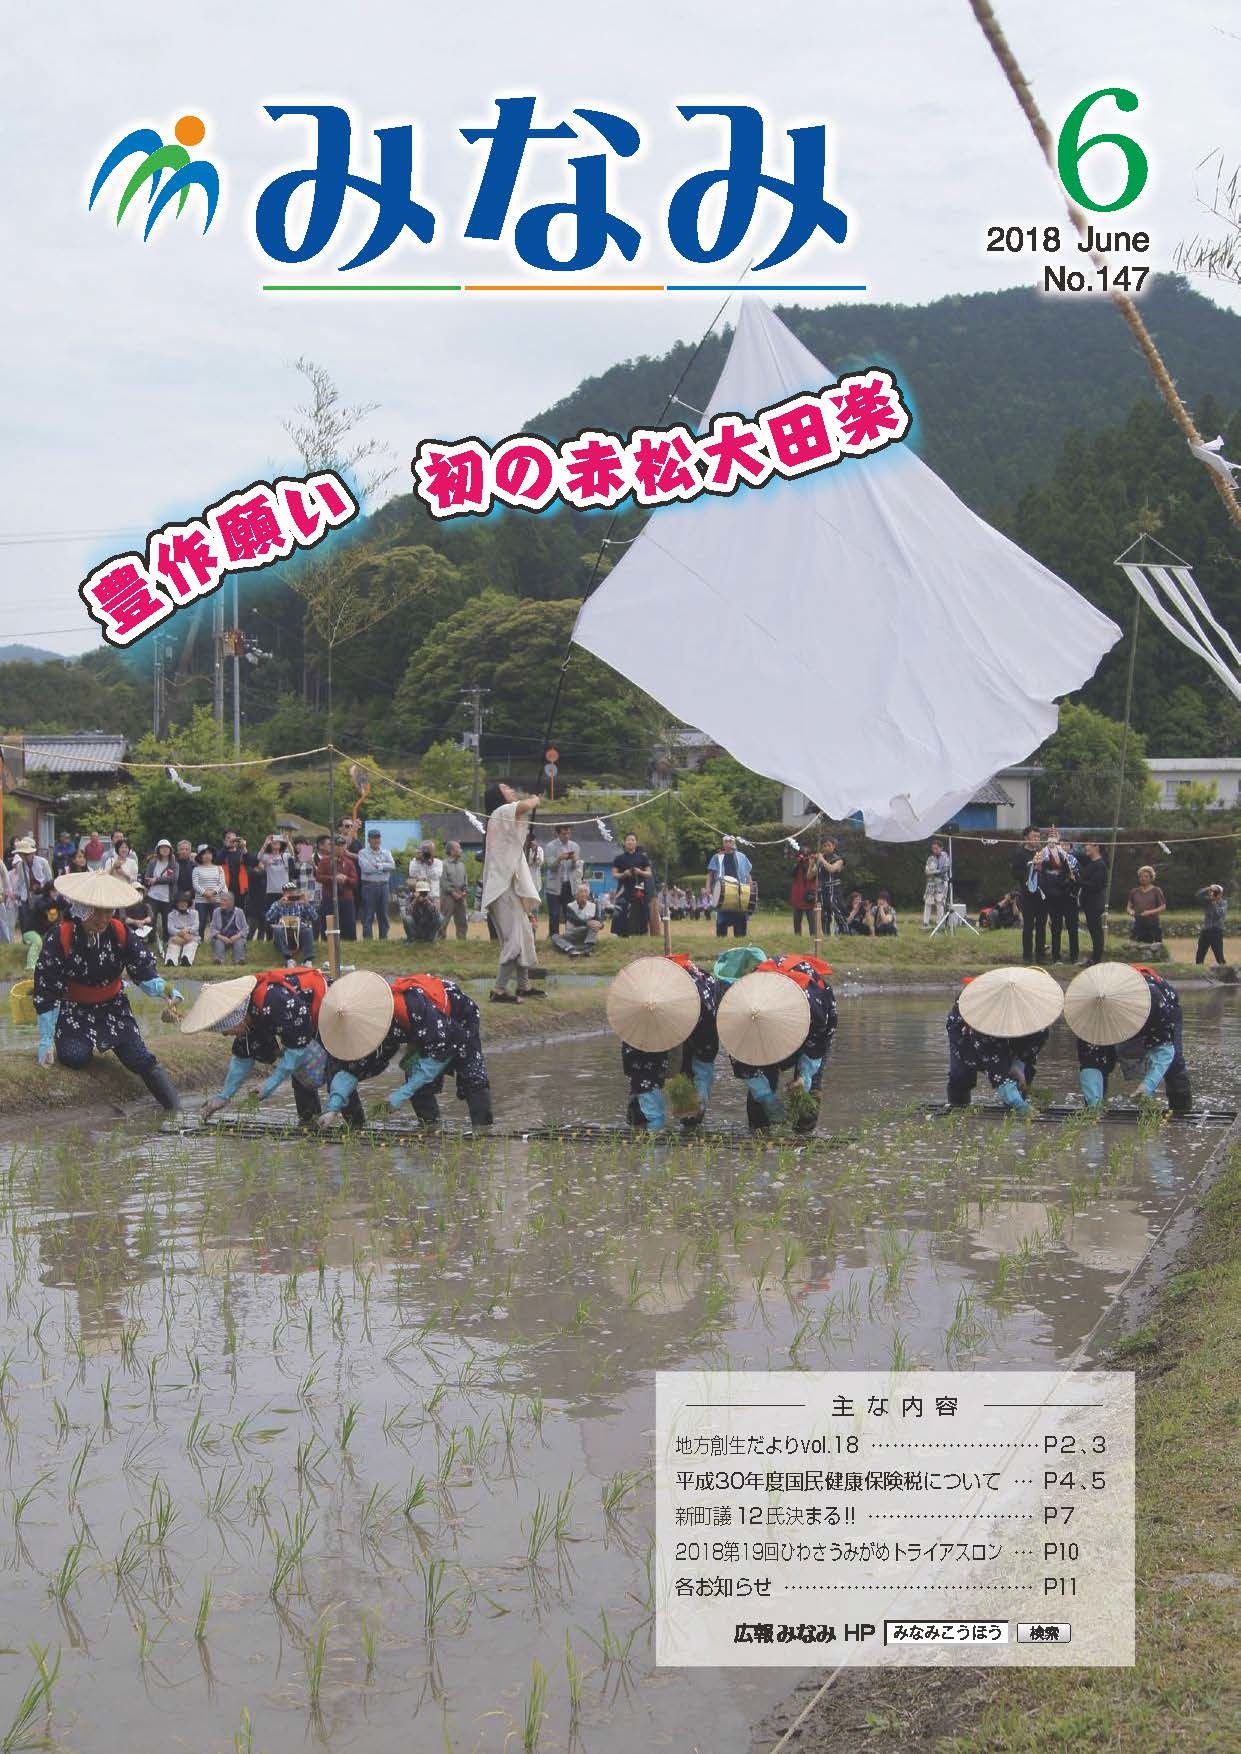 豊作を願い初の赤松大田楽開催の様子の写真